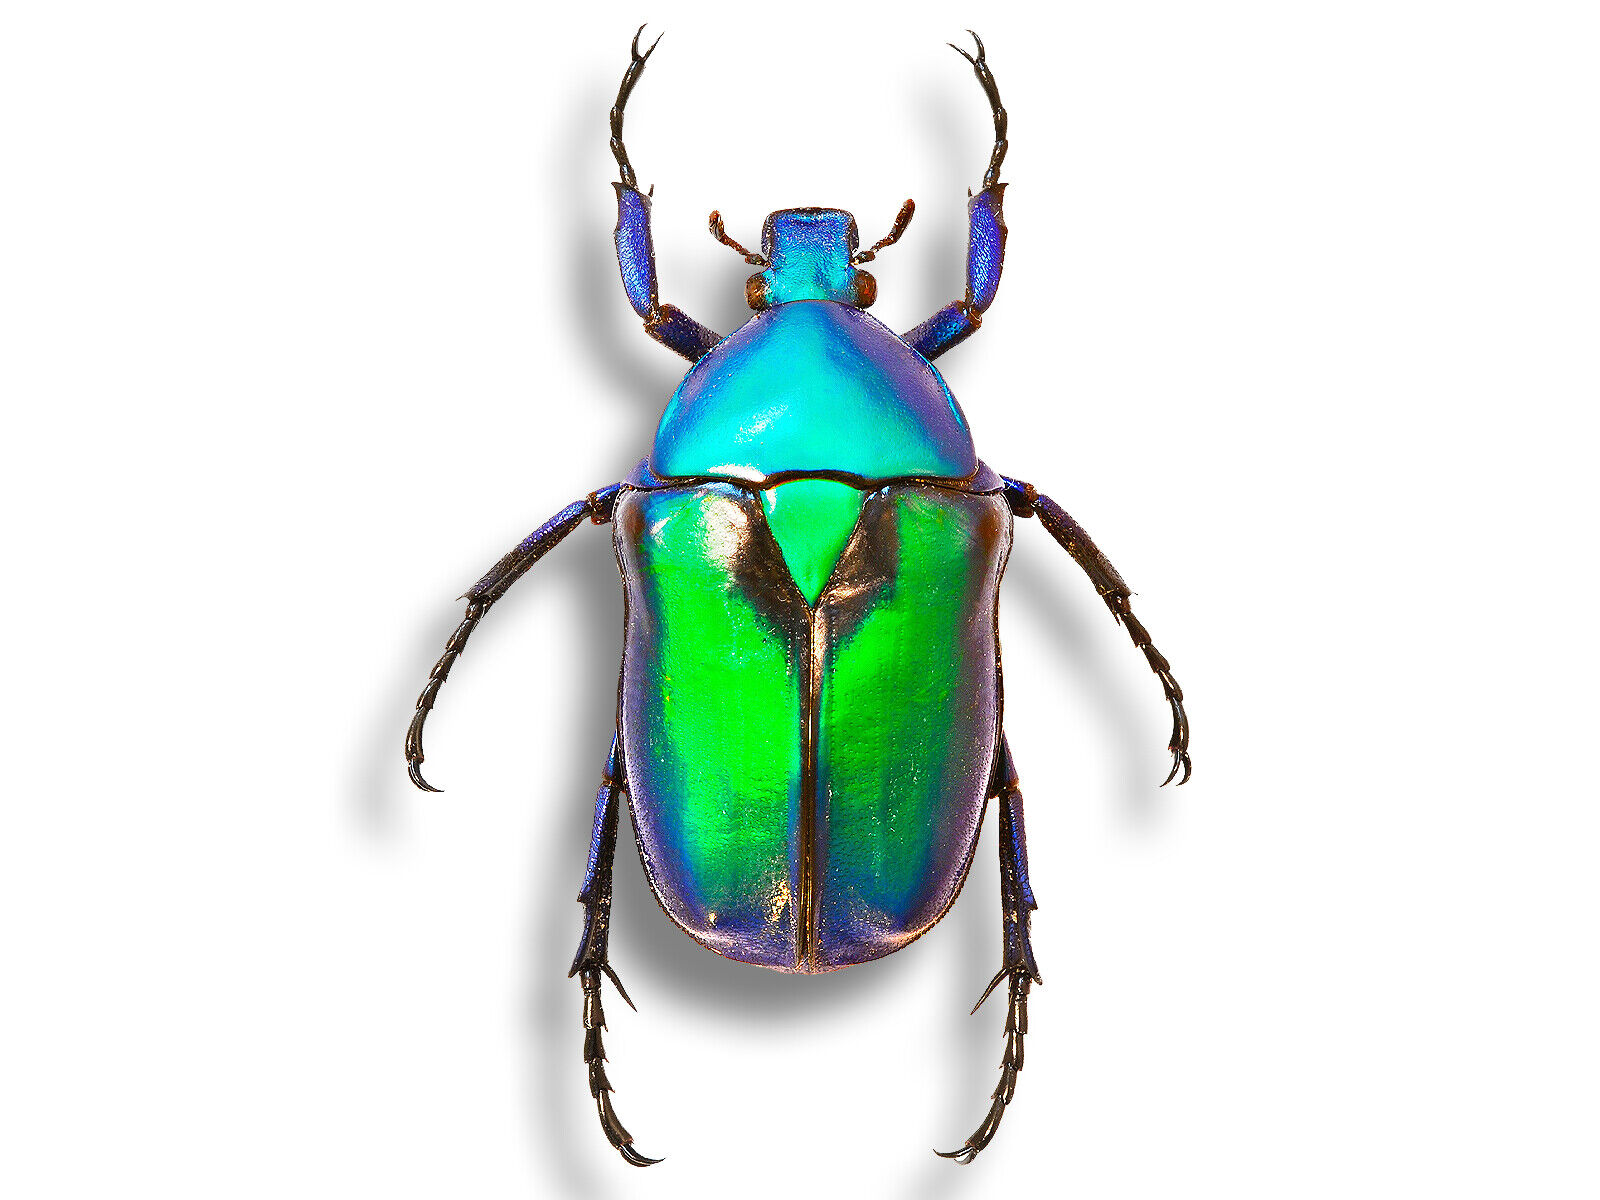 Real Cetoniidae Rhomborrhina chatanayi Lrg Metallic Beetle Insect Unmounted USA